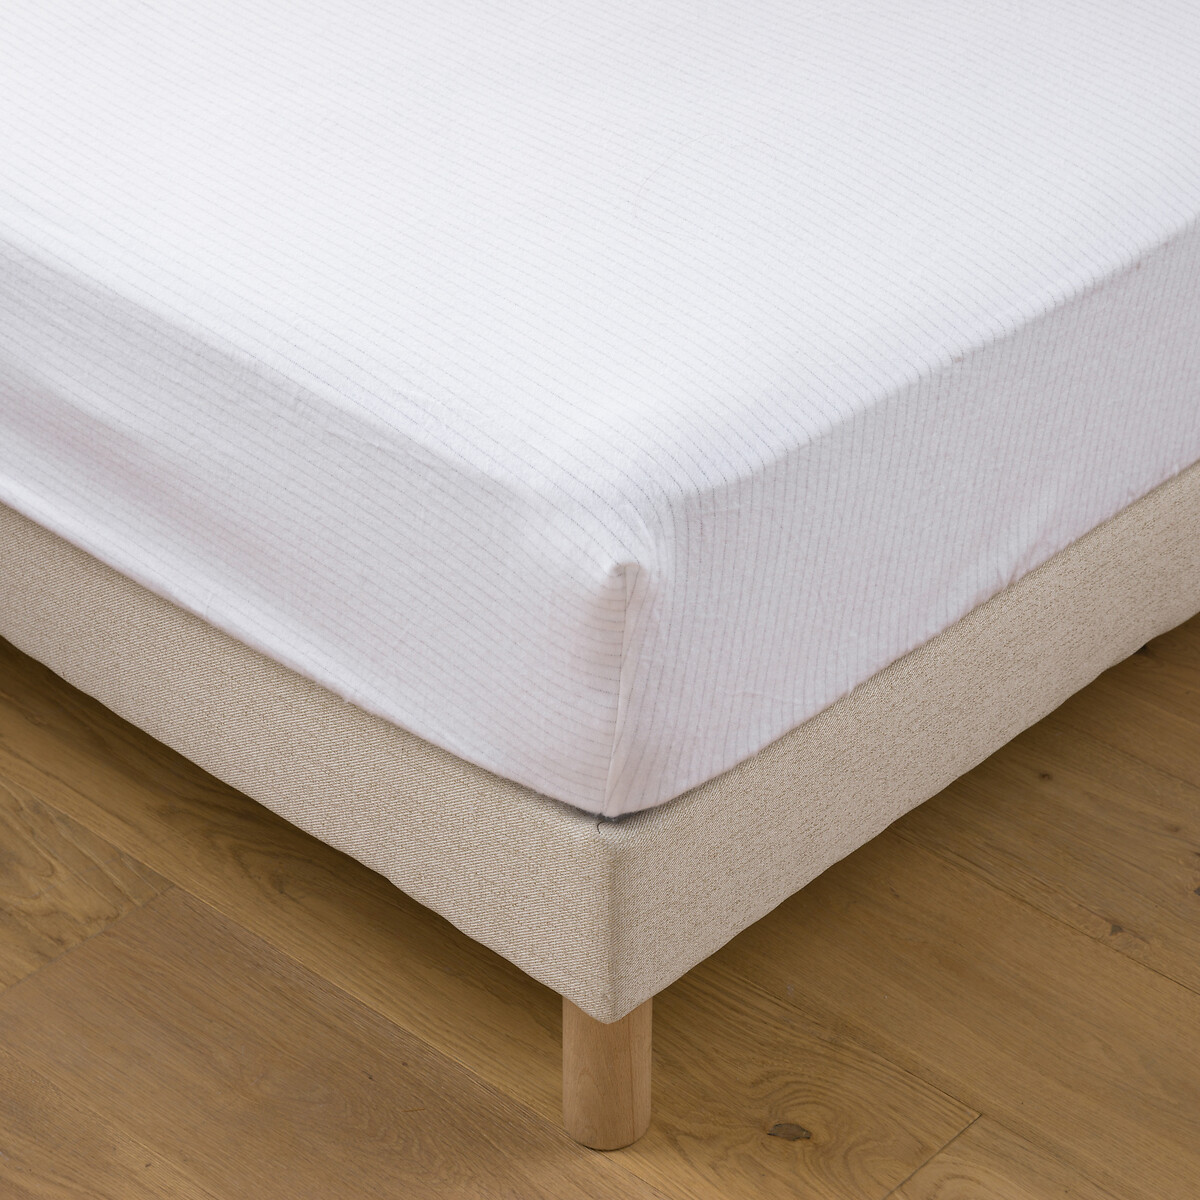 Защитная простыня для матраса из мольтона 120 x 190 см белый защитная простыня на матрас из эластичной ткани 90 x 190 см белый